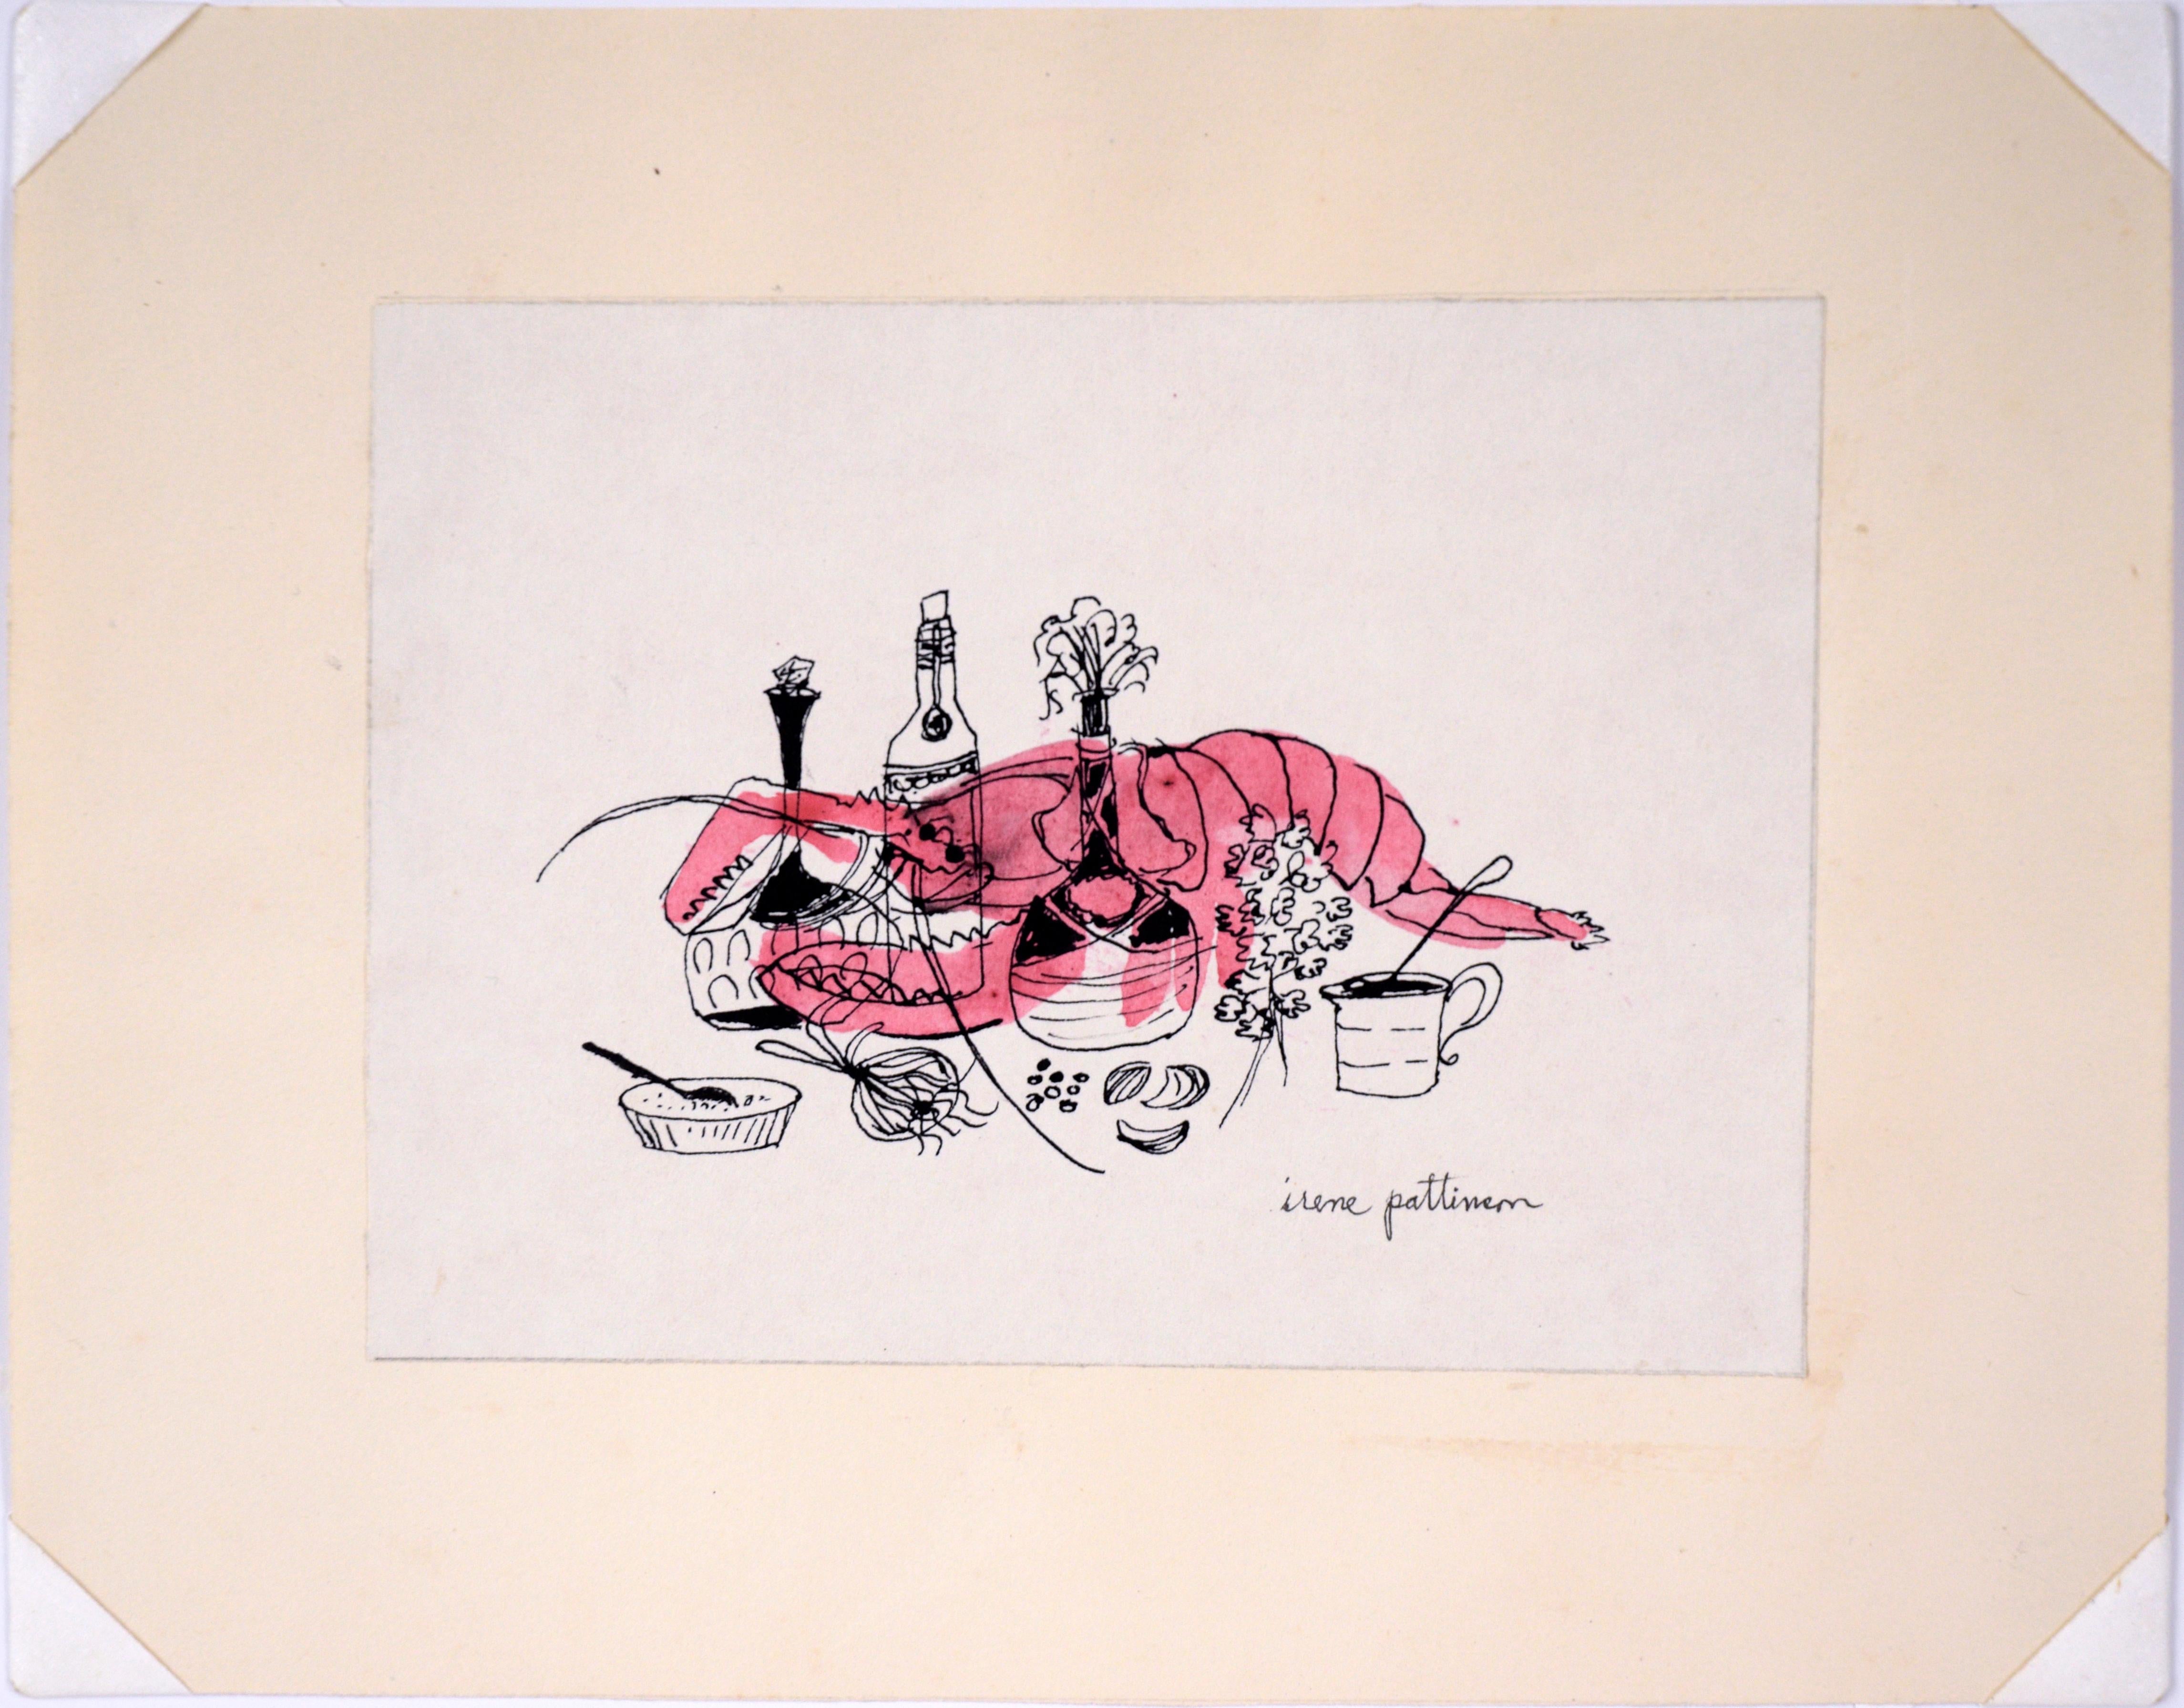 Chef Lobster – Vintage-Illustration in Tinte und Aquarell

Die charmante Illustration von Irene Pattinson (Amerikanerin, 1909-1999) zeigt einen rosa Hummer hinter verzierten Flaschen mit Öl und anderen Kochzutaten, darunter Knoblauch und Zwiebeln,